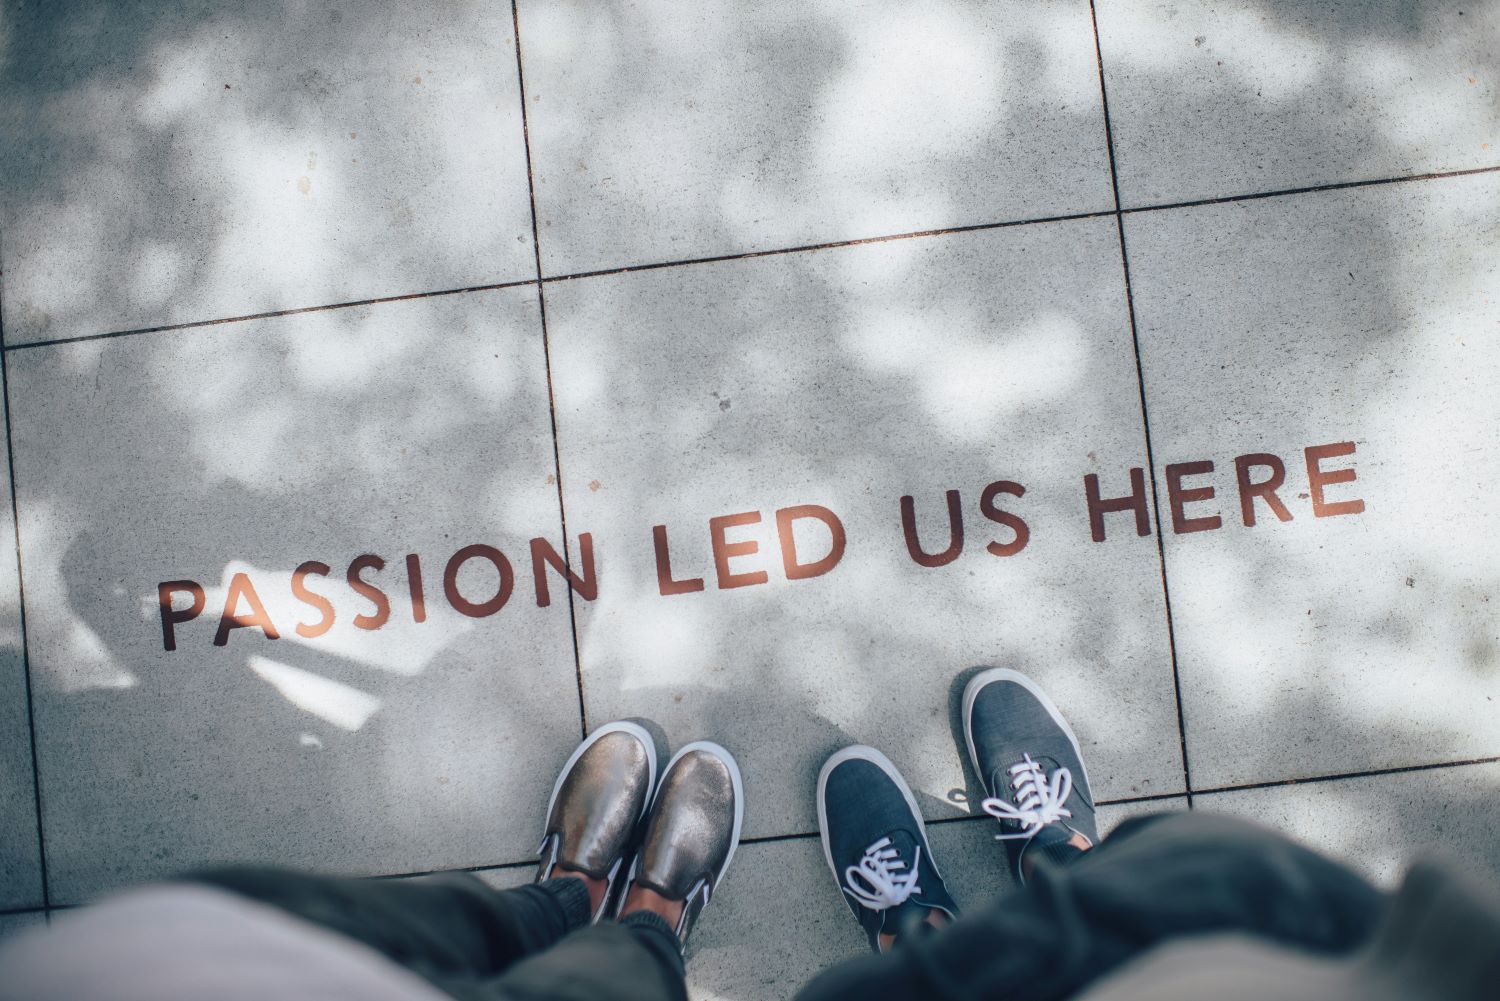 Zu sehen ist ein Schriftzug auf dem Boden, der sagt "Passion lead us here."